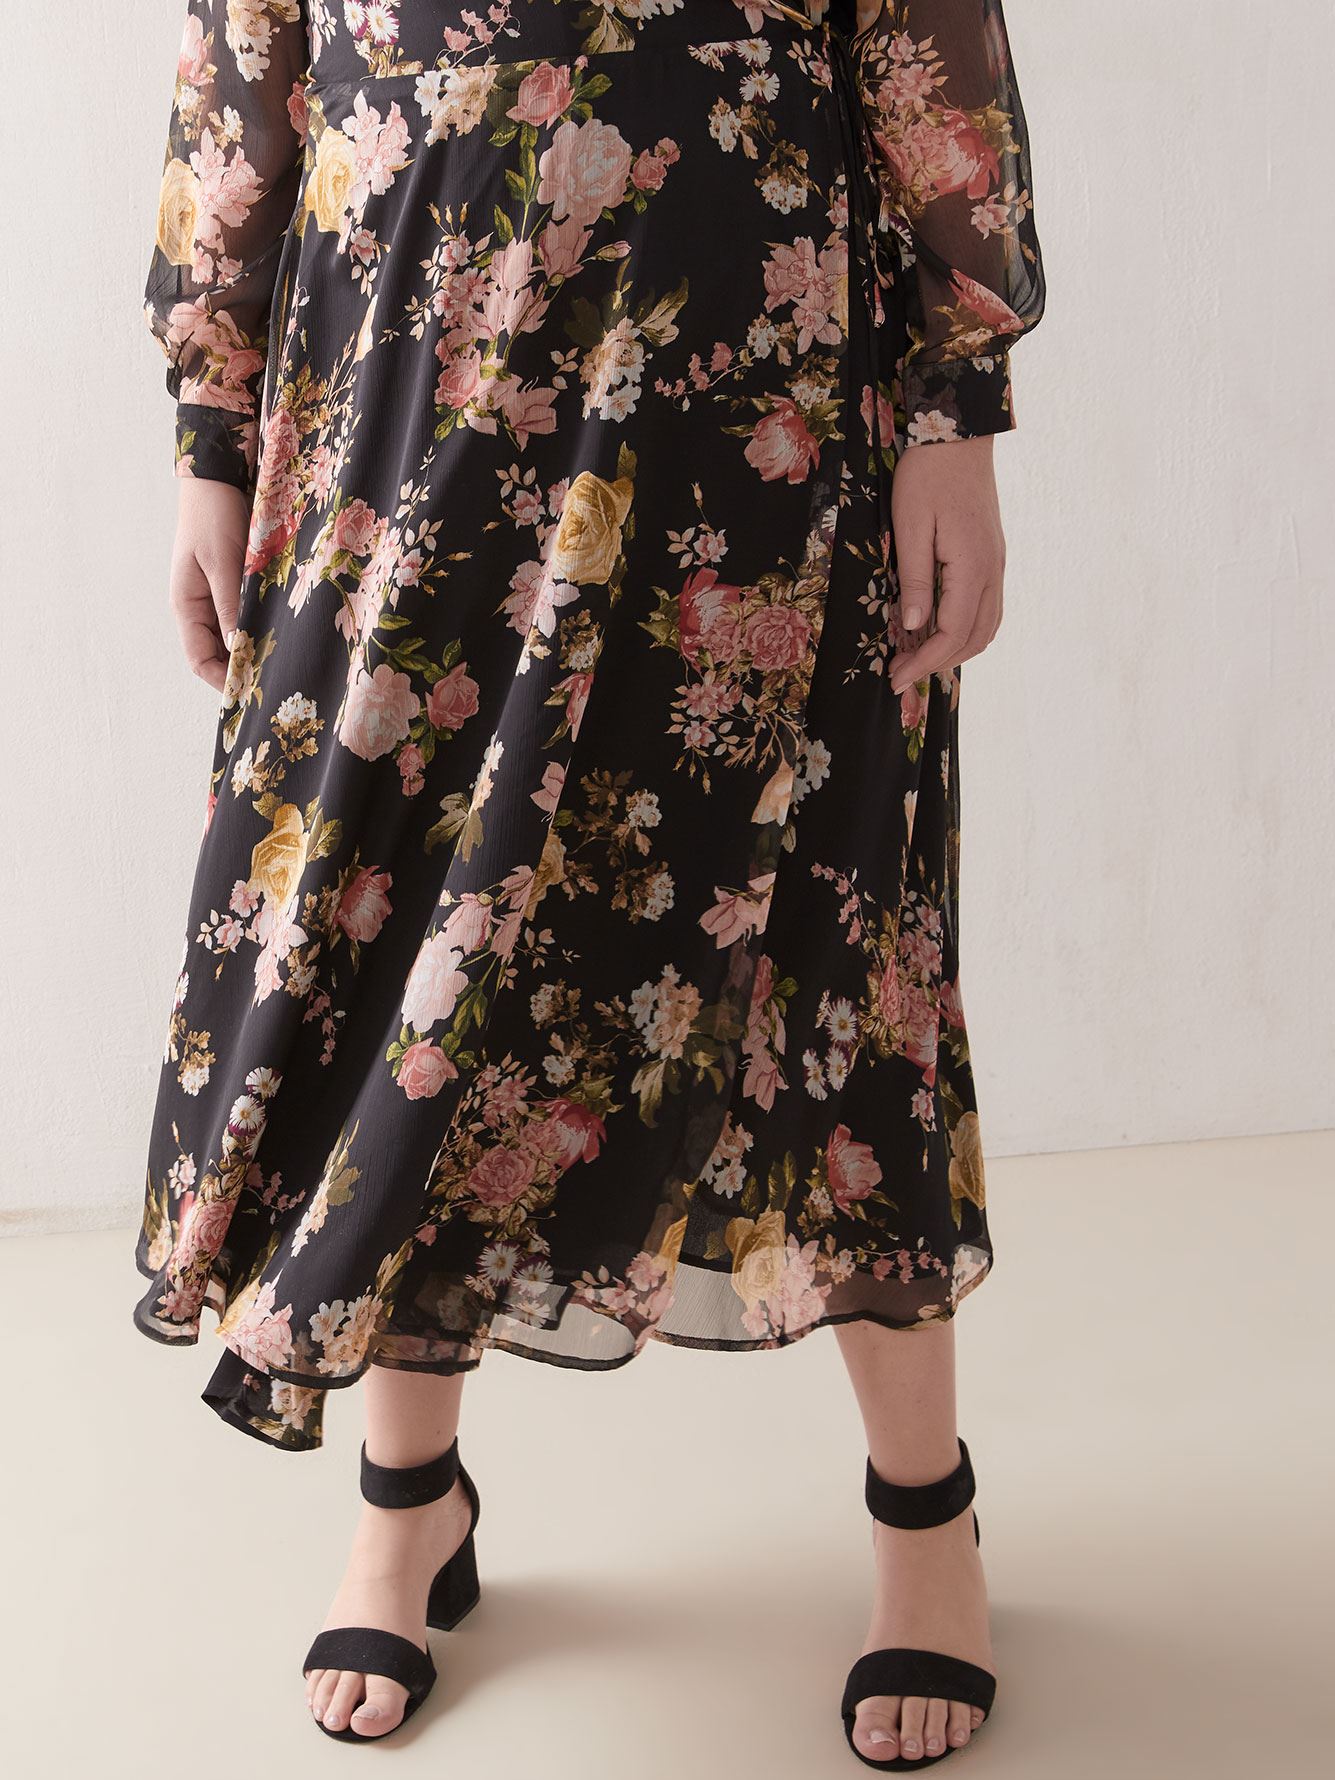 Floral Print Wrap Dress - Vince Camuto ...